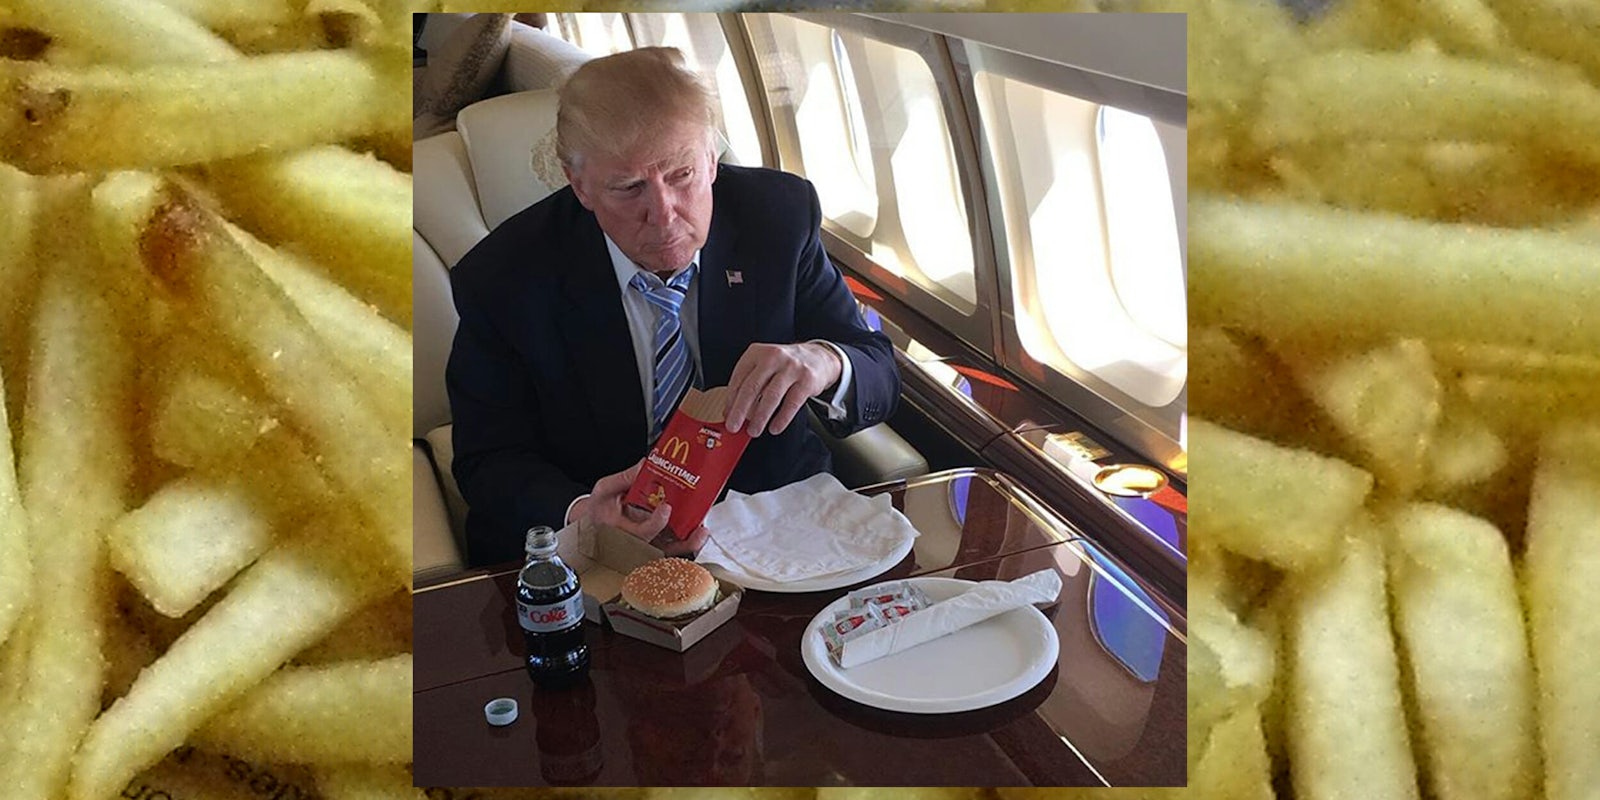 Donald Trump eating McDonald's